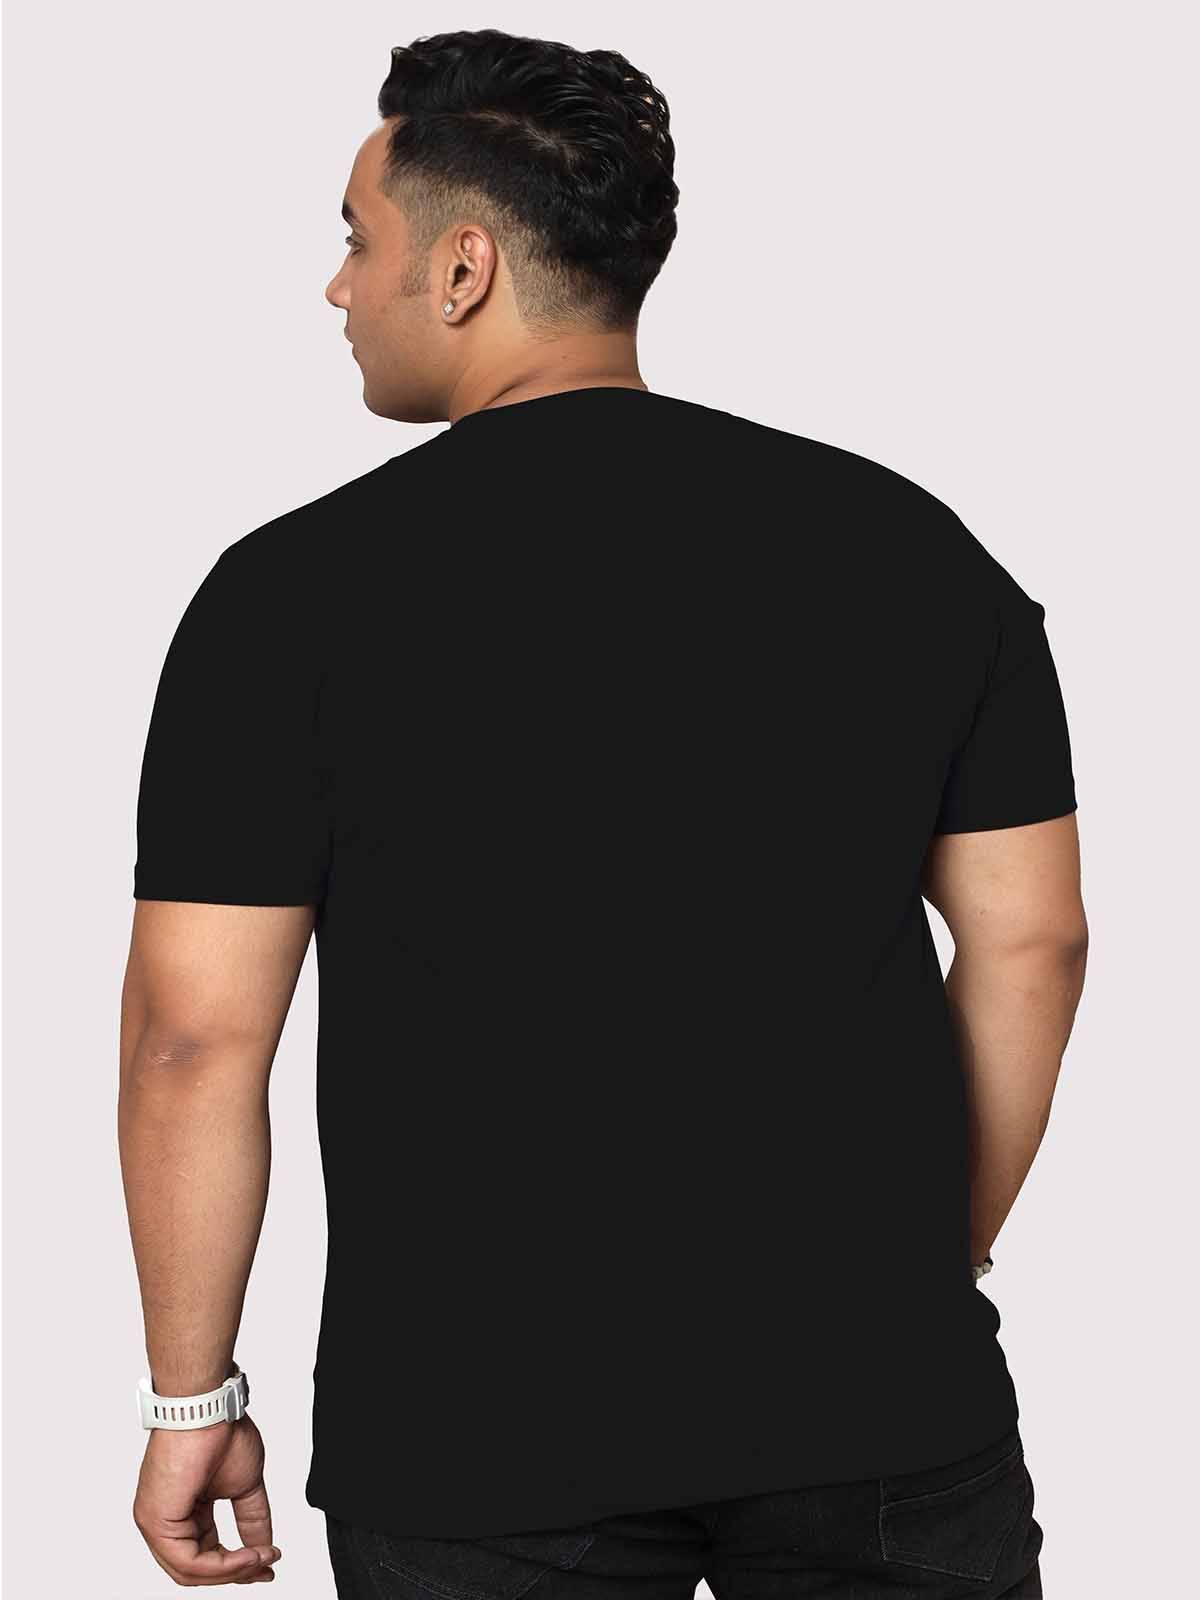 Men Plus Size Black Love Valentine's Day Printed Round Neck T-Shirt - Guniaa Fashions